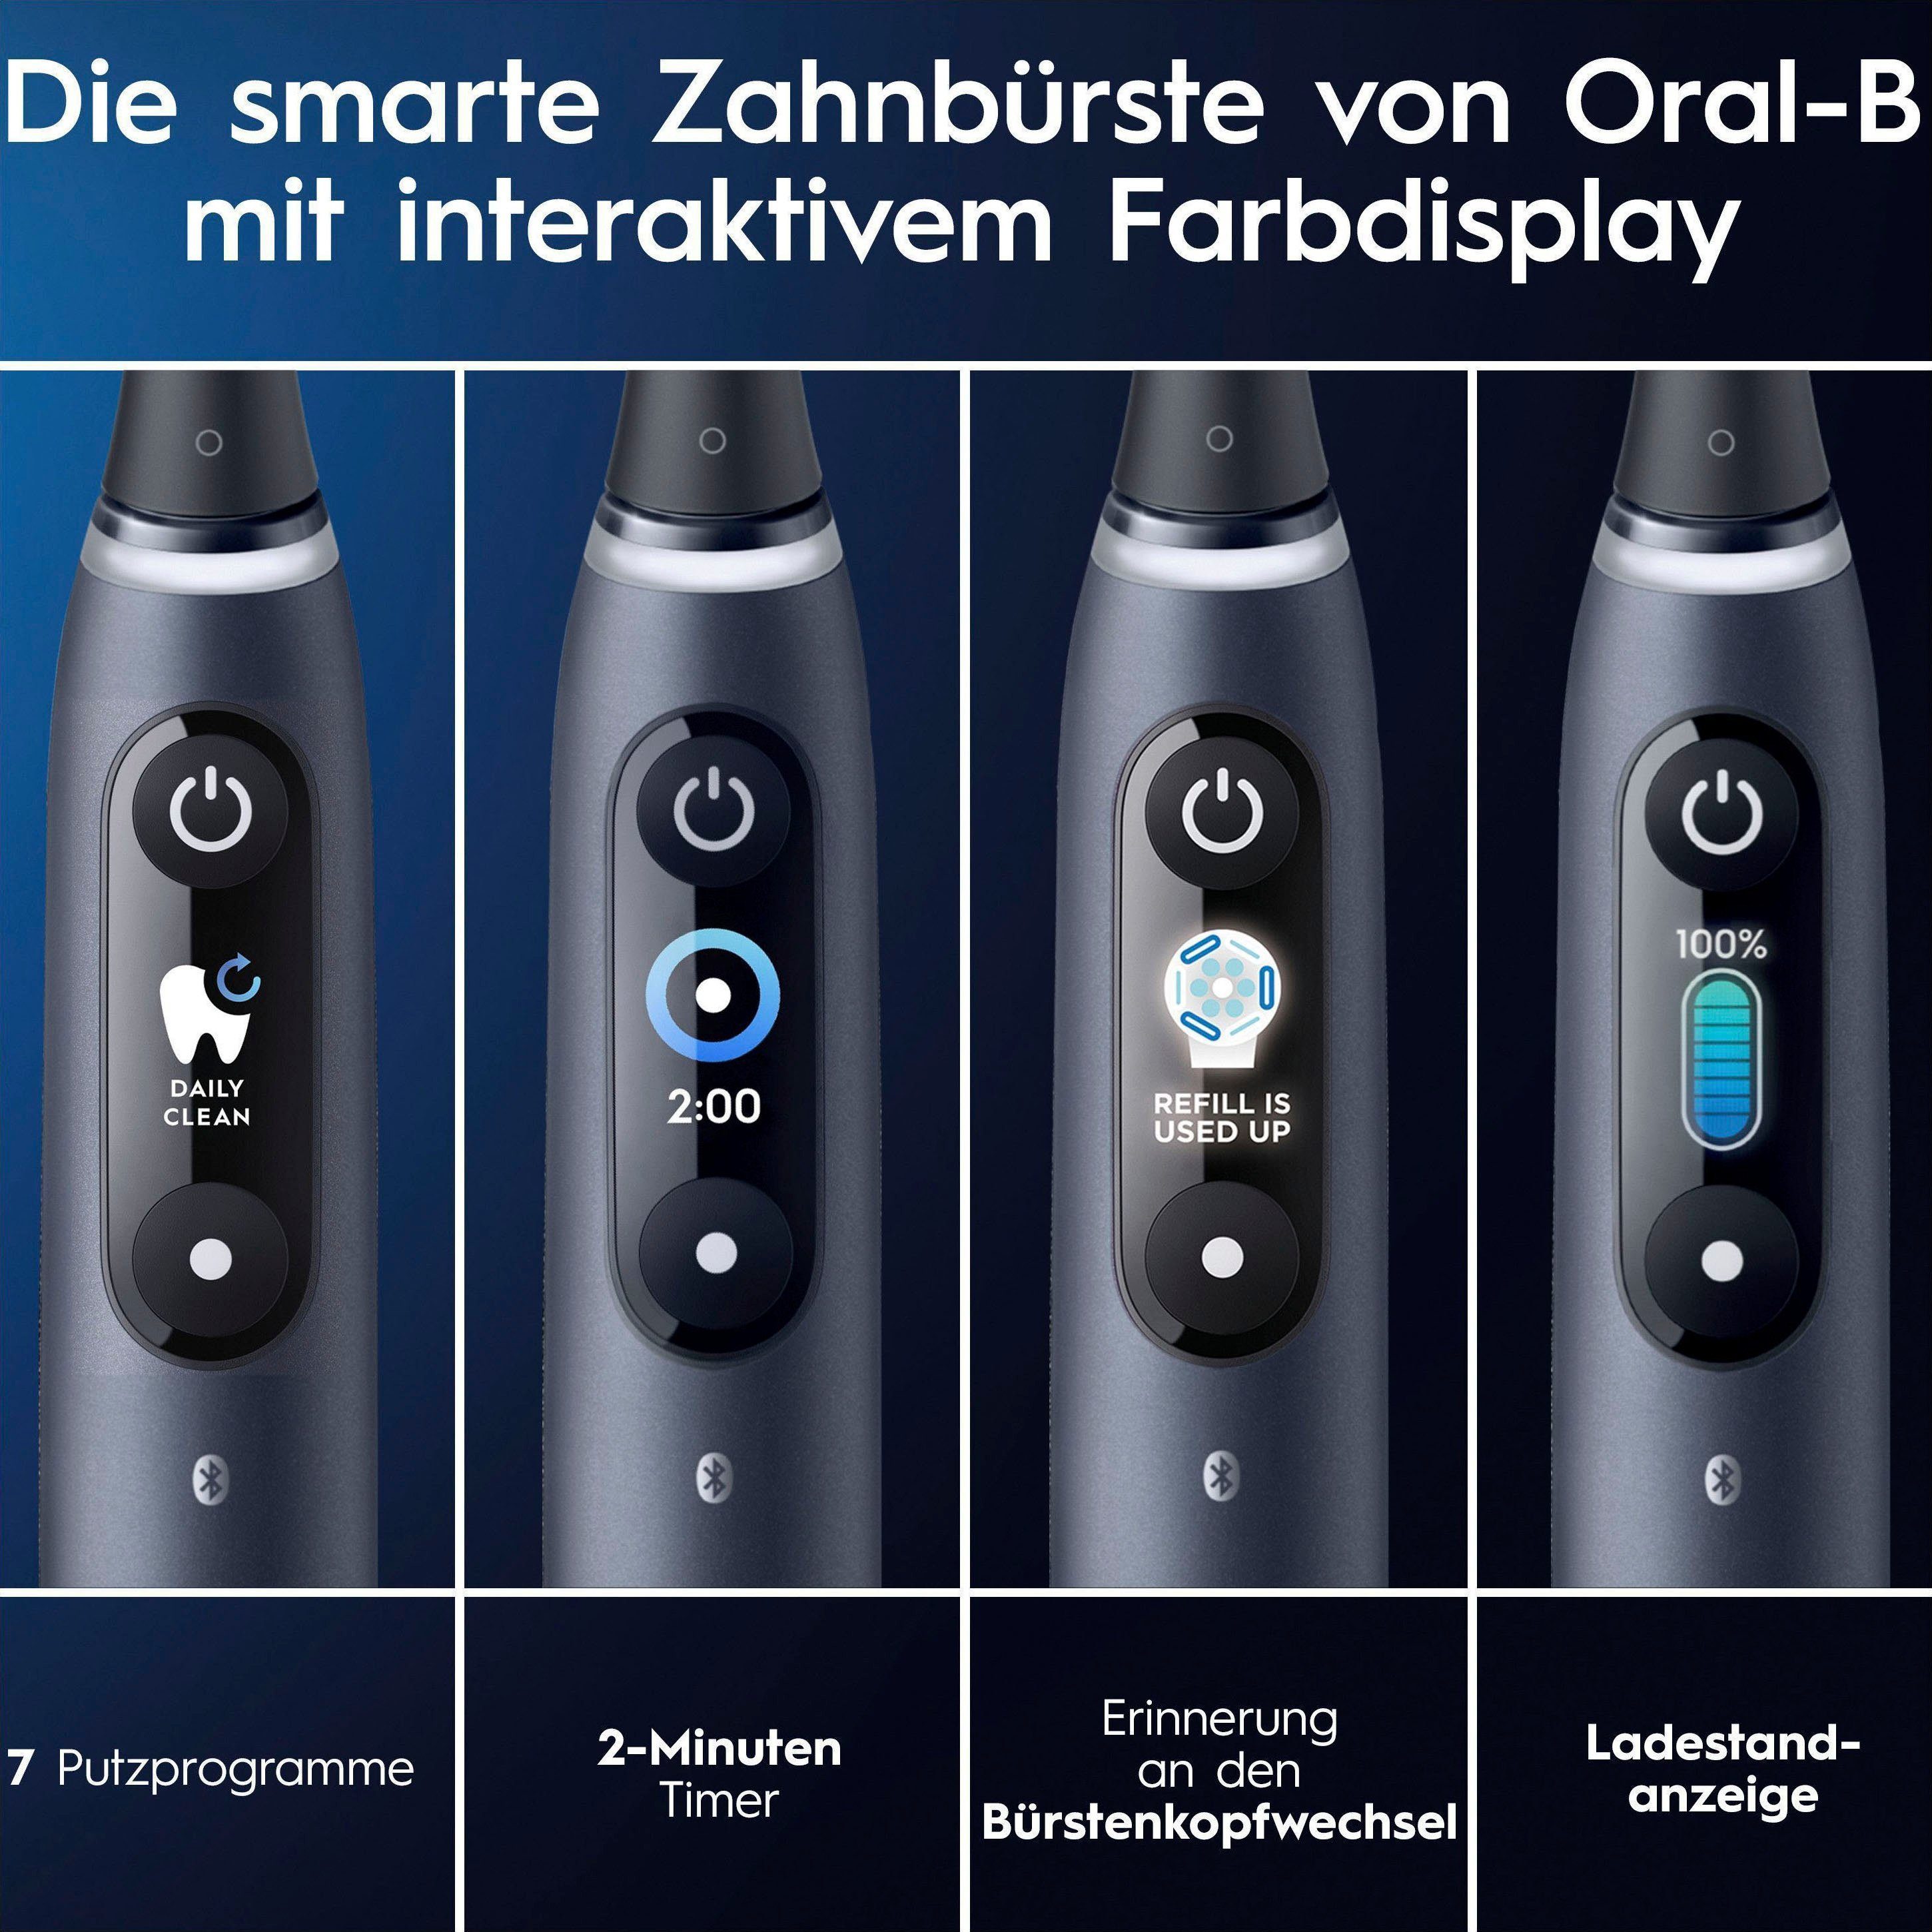 Oral-B Elektrische Zahnbürste Magnet-Technologie, mit St., onyx 2 Aufsteckbürsten: Putzmodi, & Farbdisplay 9, 7 black iO Lade-Reiseetui